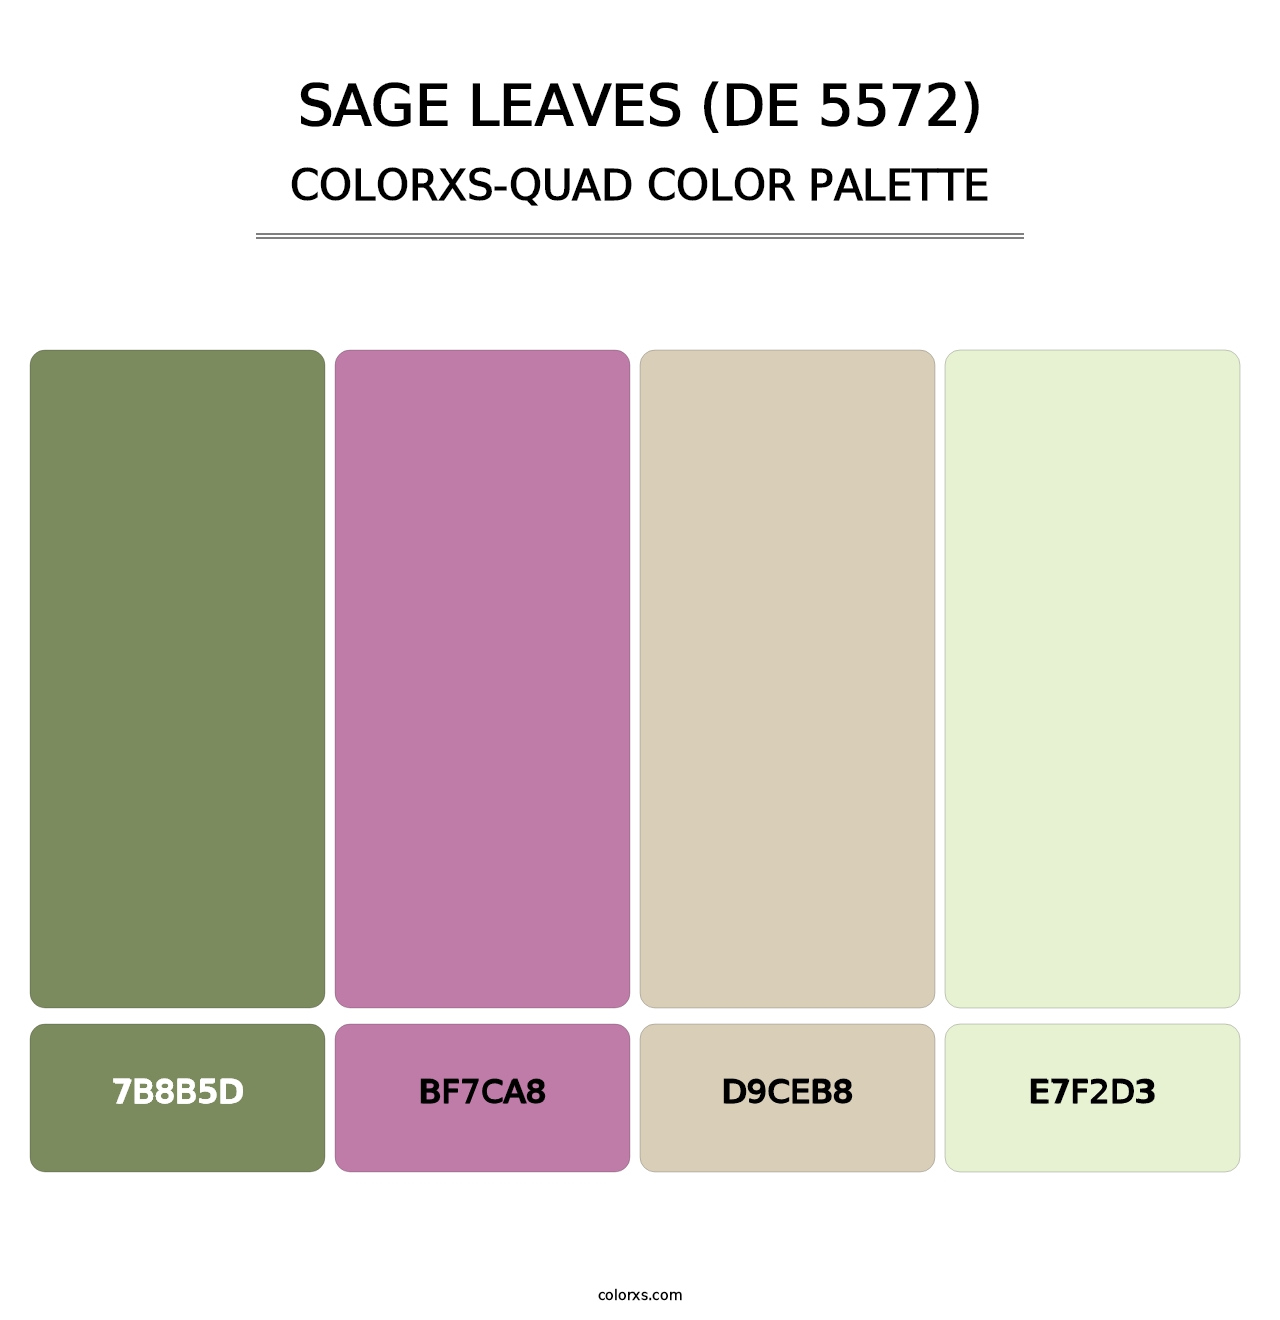 Sage Leaves (DE 5572) - Colorxs Quad Palette